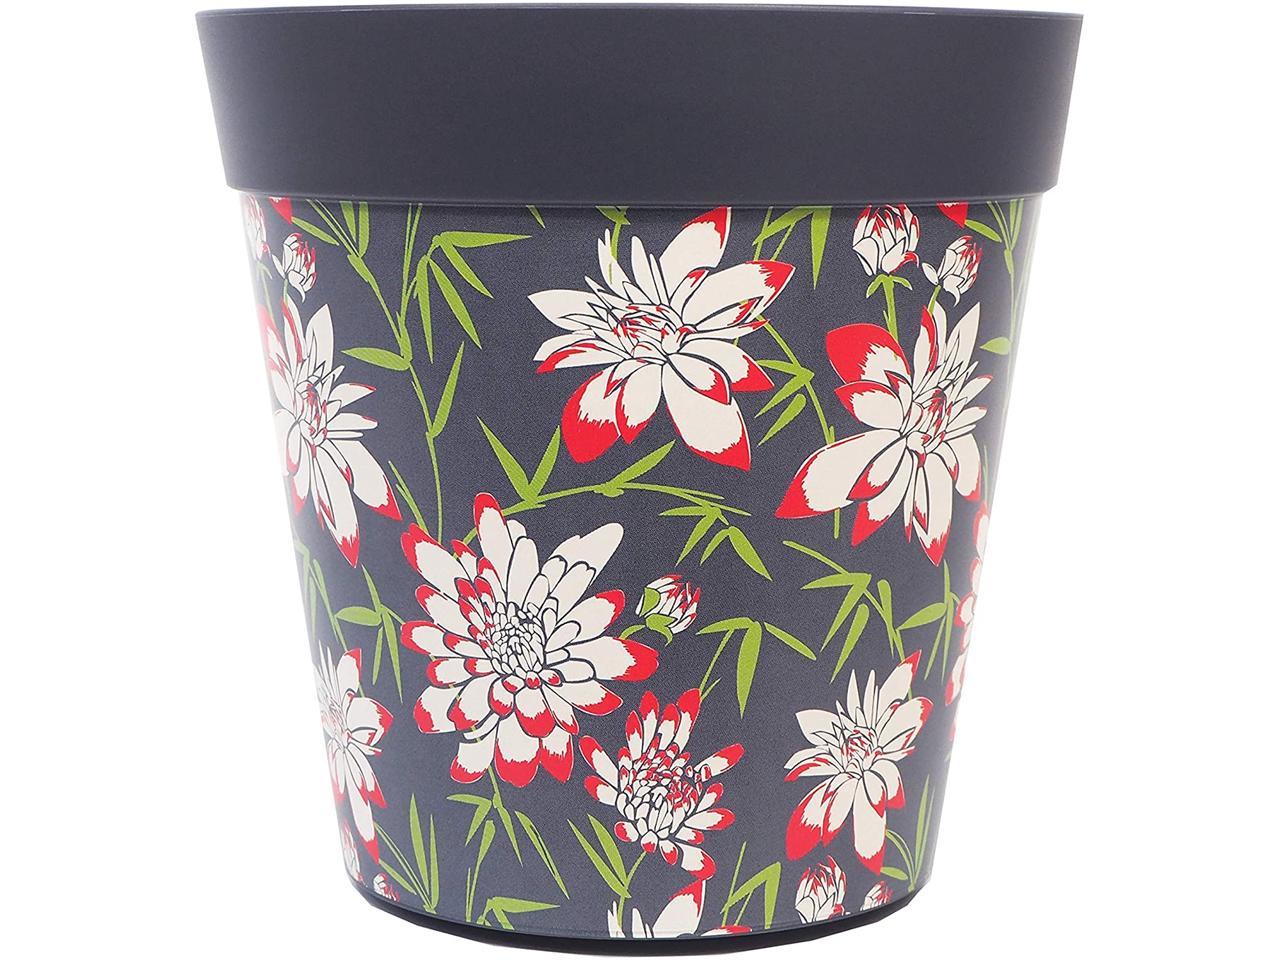 Hum FlowerPots Decorative Flower Pots Indoor & Outdoor Usage 22cm diameter